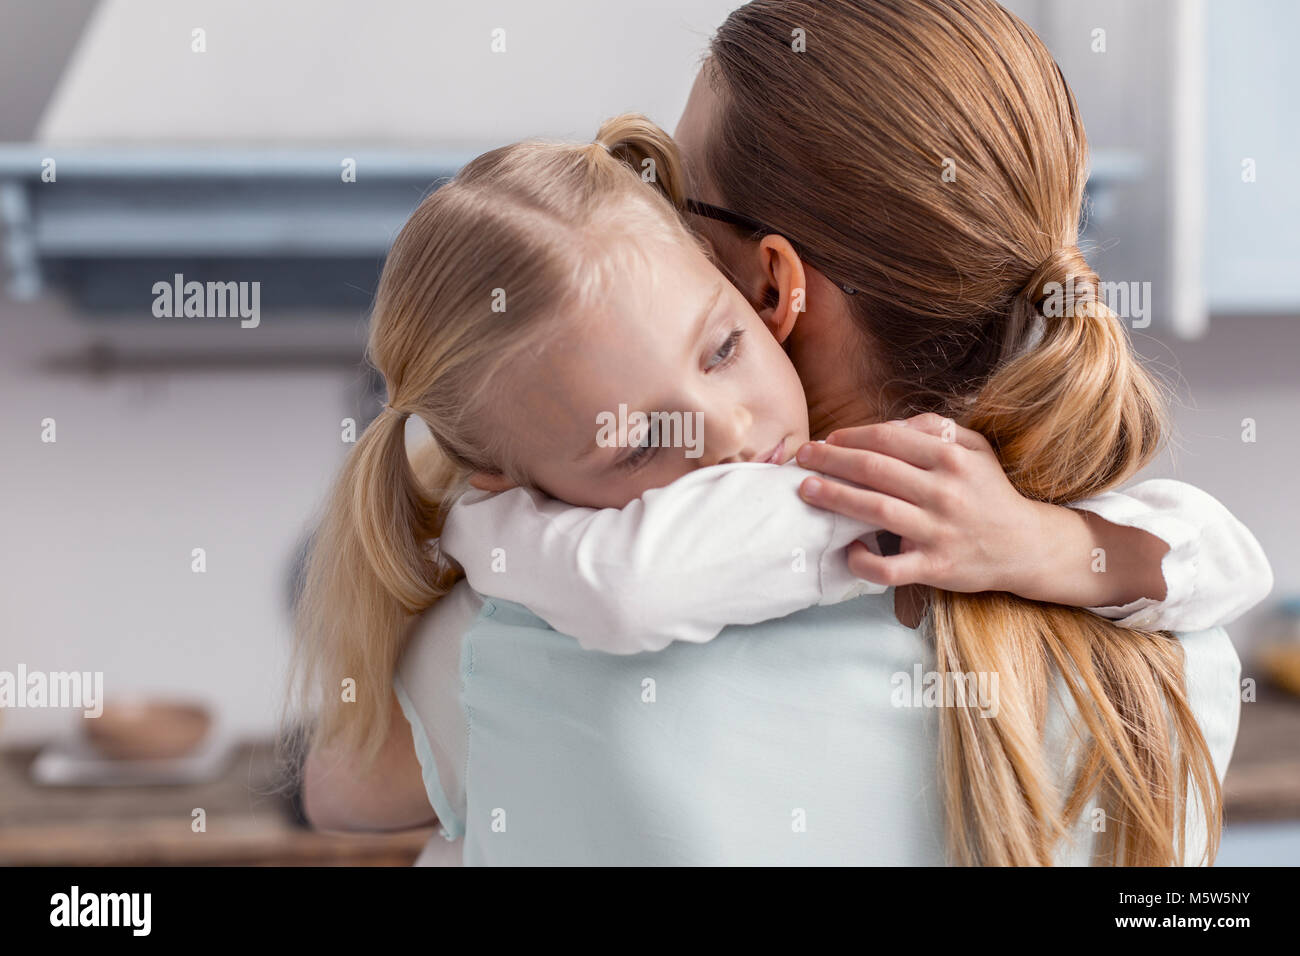 Мама изображает дочь. Девочка обнимает маму. Девочка обнимает маму в комнате для свиданий. Мать обнимает ребенка в больнице. Девочка обнимает маму и бабушку фото.